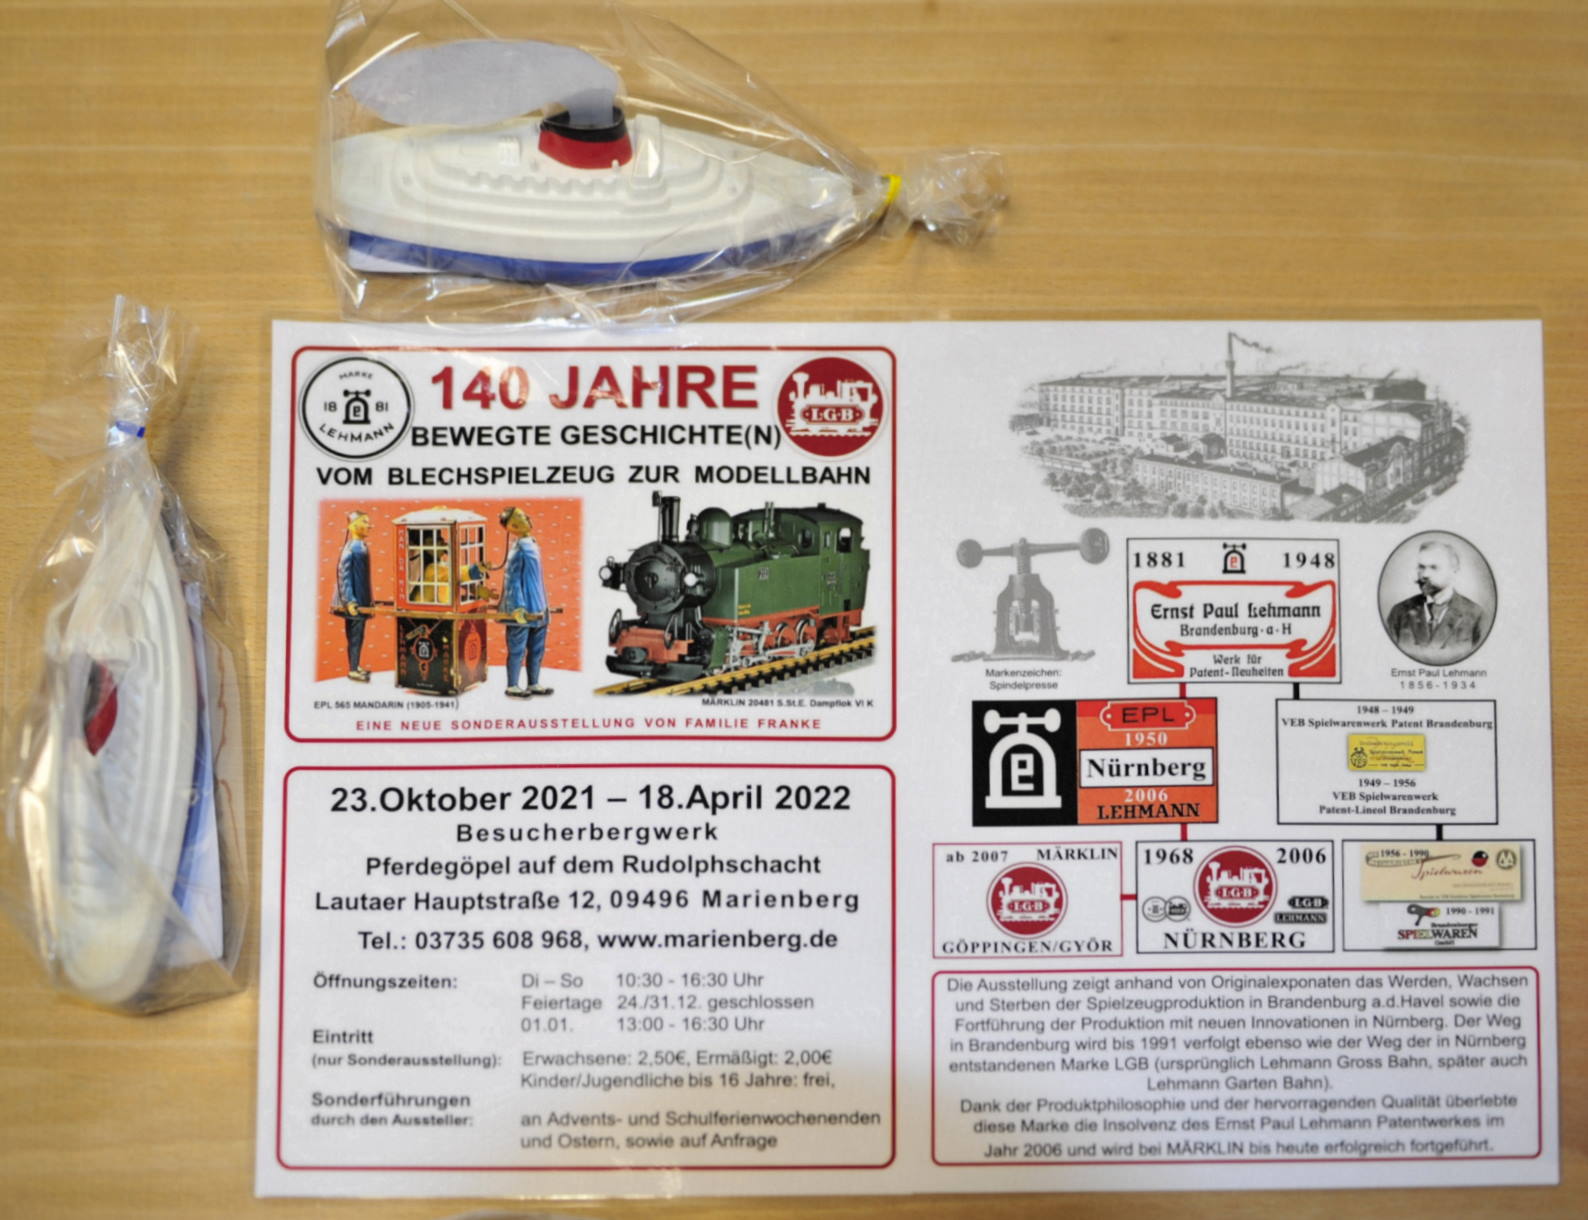 Das Bild zeigt das Motto der Ausstellung, die Öffnungszeiten mit Adresse und auf der rechten Seite die stark vereinfachte Darstellung über WERDEN, WACHSEN und STERBEN der Blechspielzeugproduktion in Brandenburg.